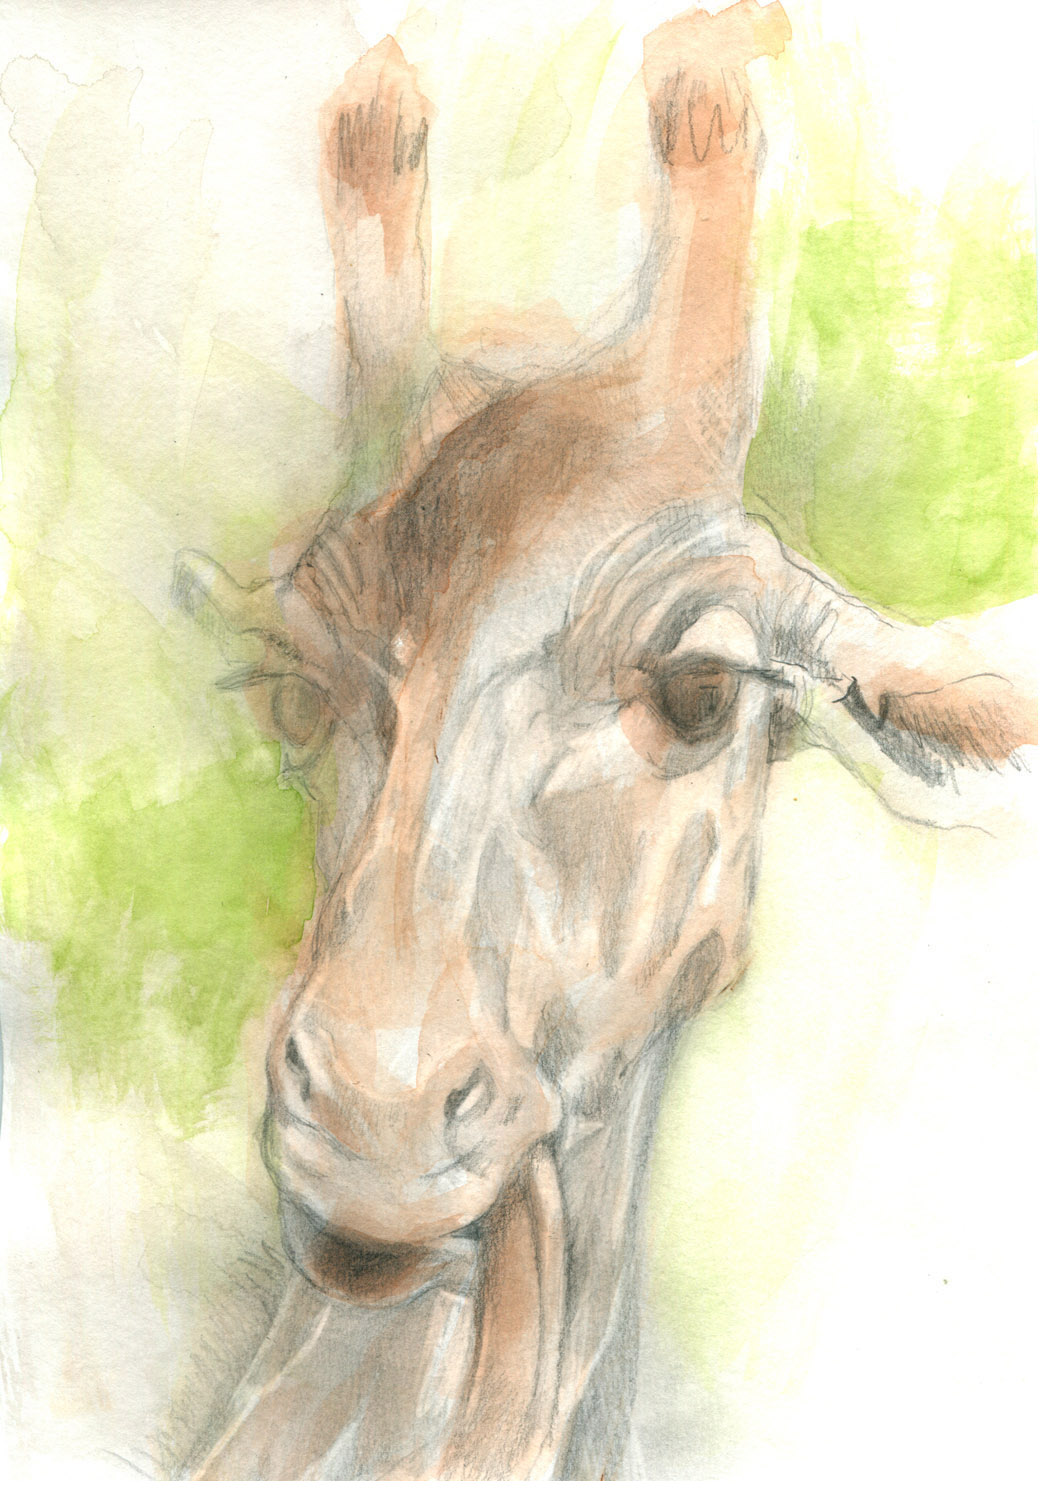 Girafa. Acuarela y grafito. 29,7 x 21 cm